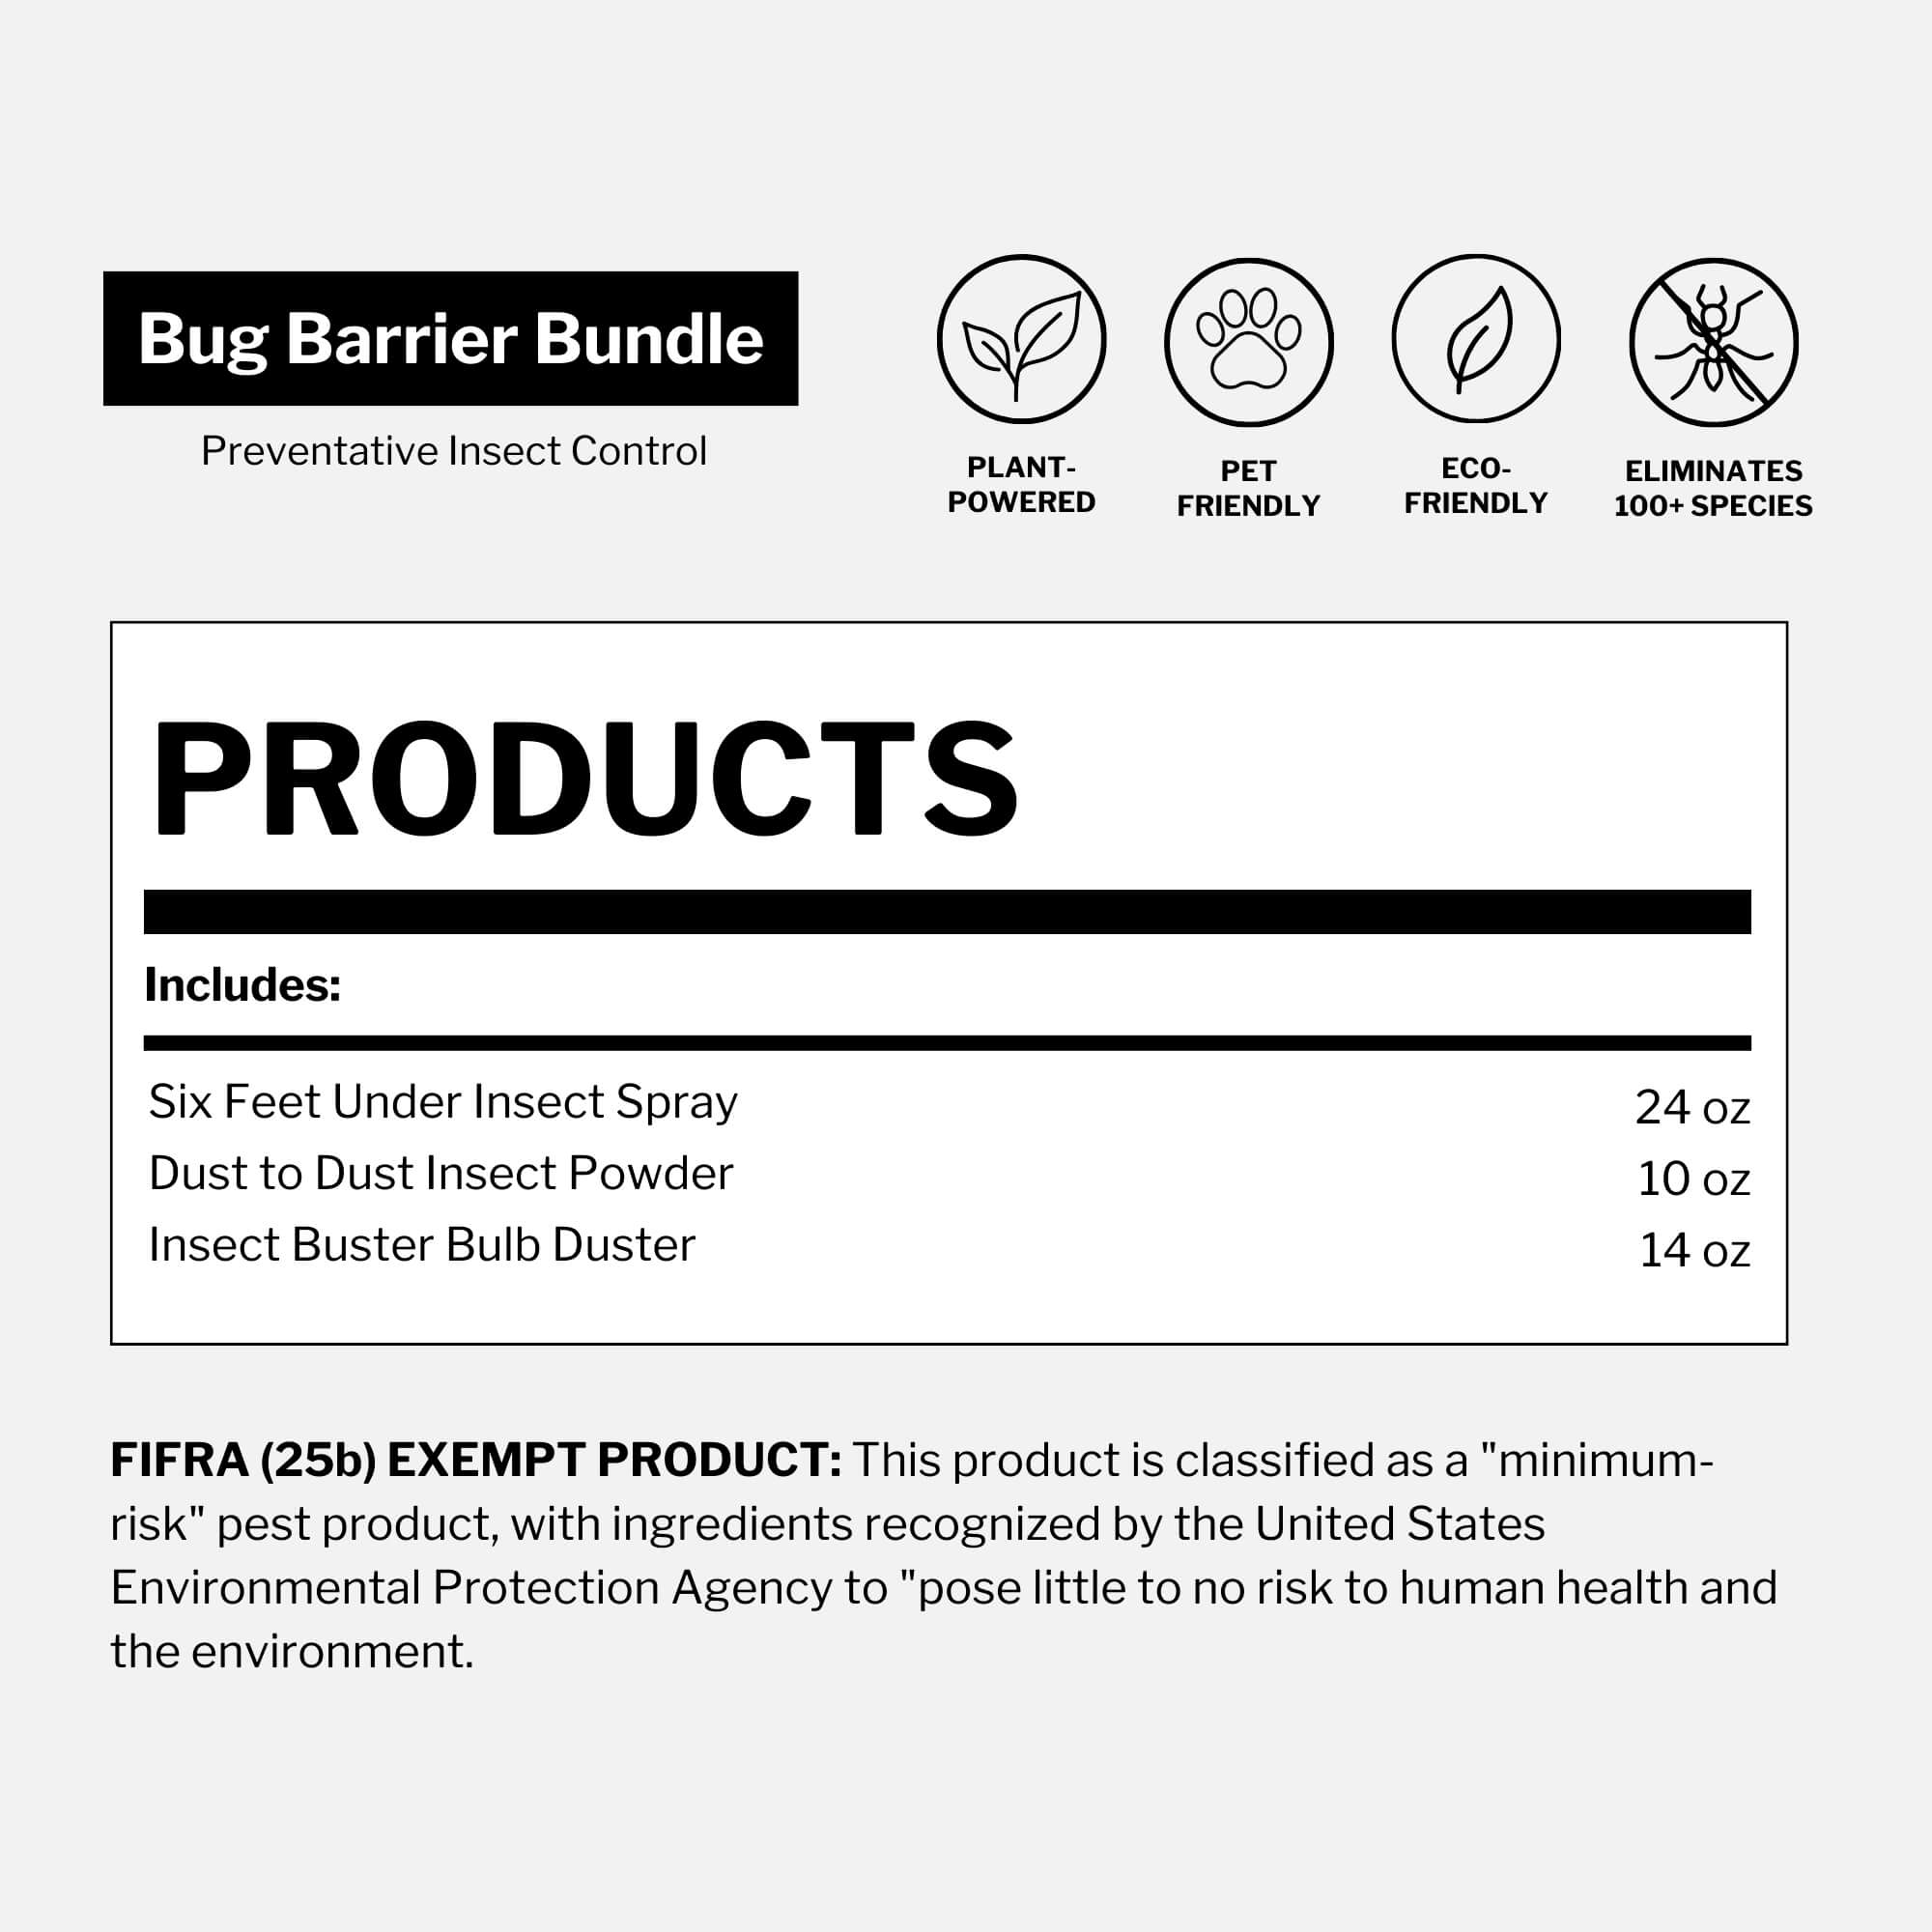 Bug Barrier Bundle